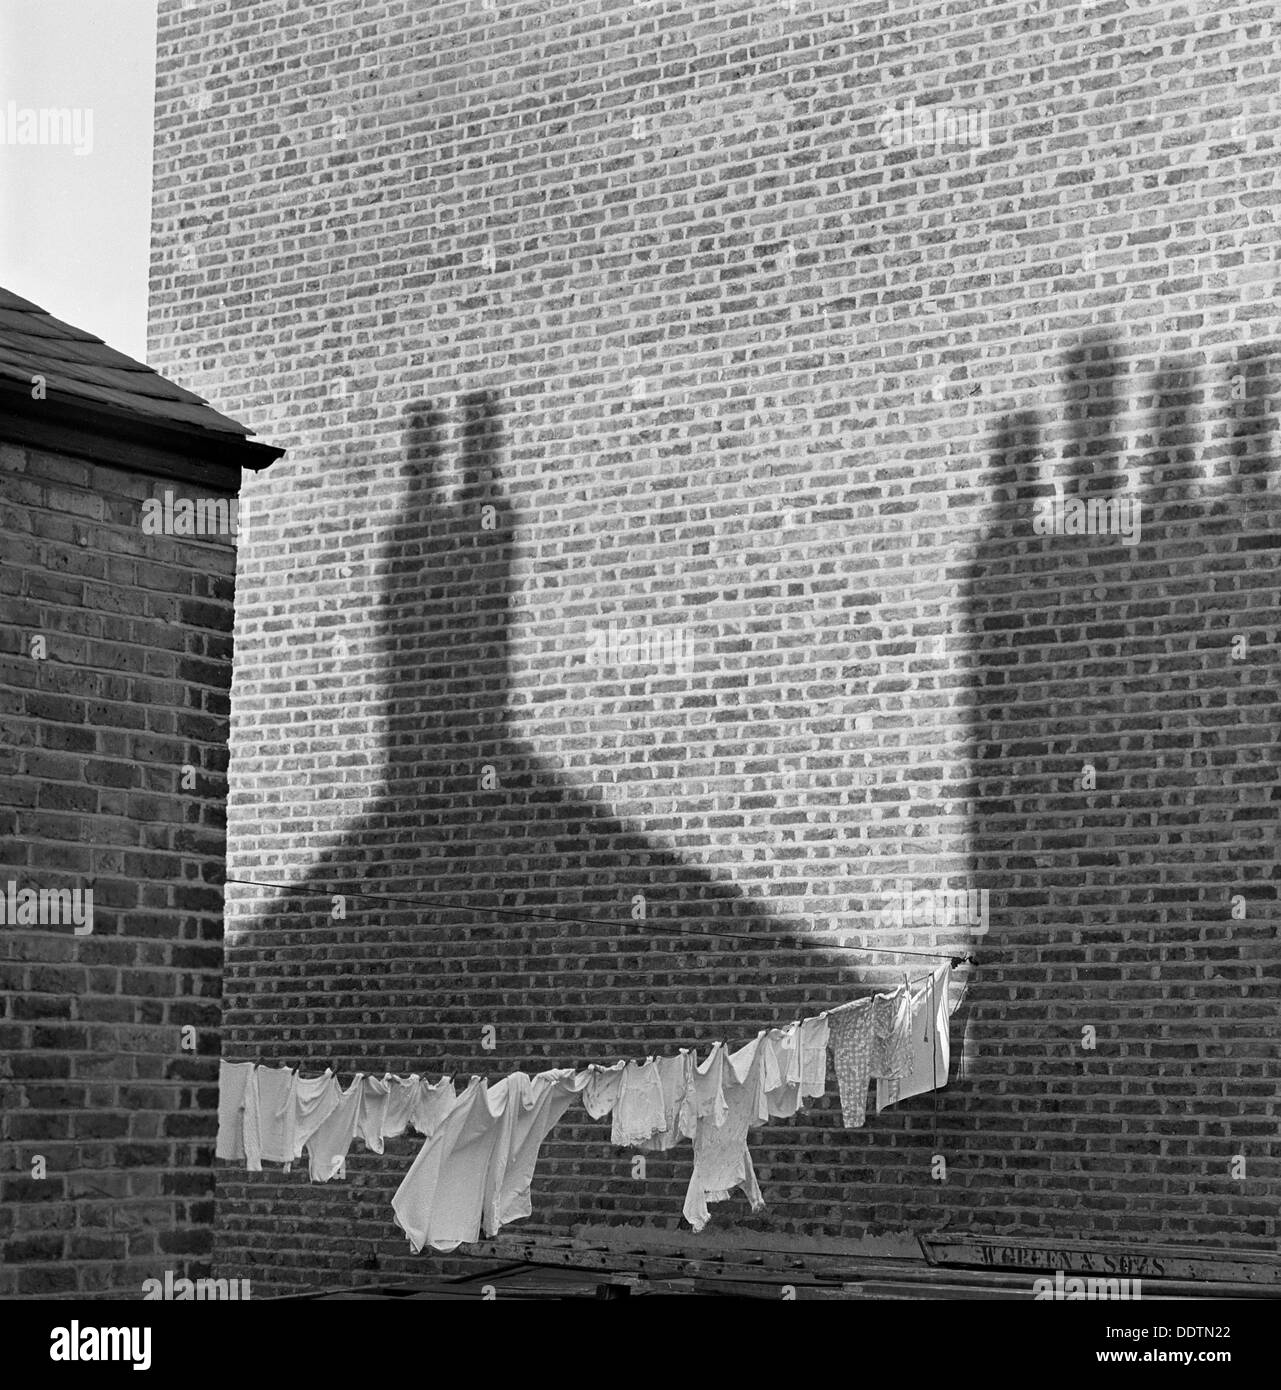 Shadows and laundry, London, 1964. Artist: John Gay Stock Photo